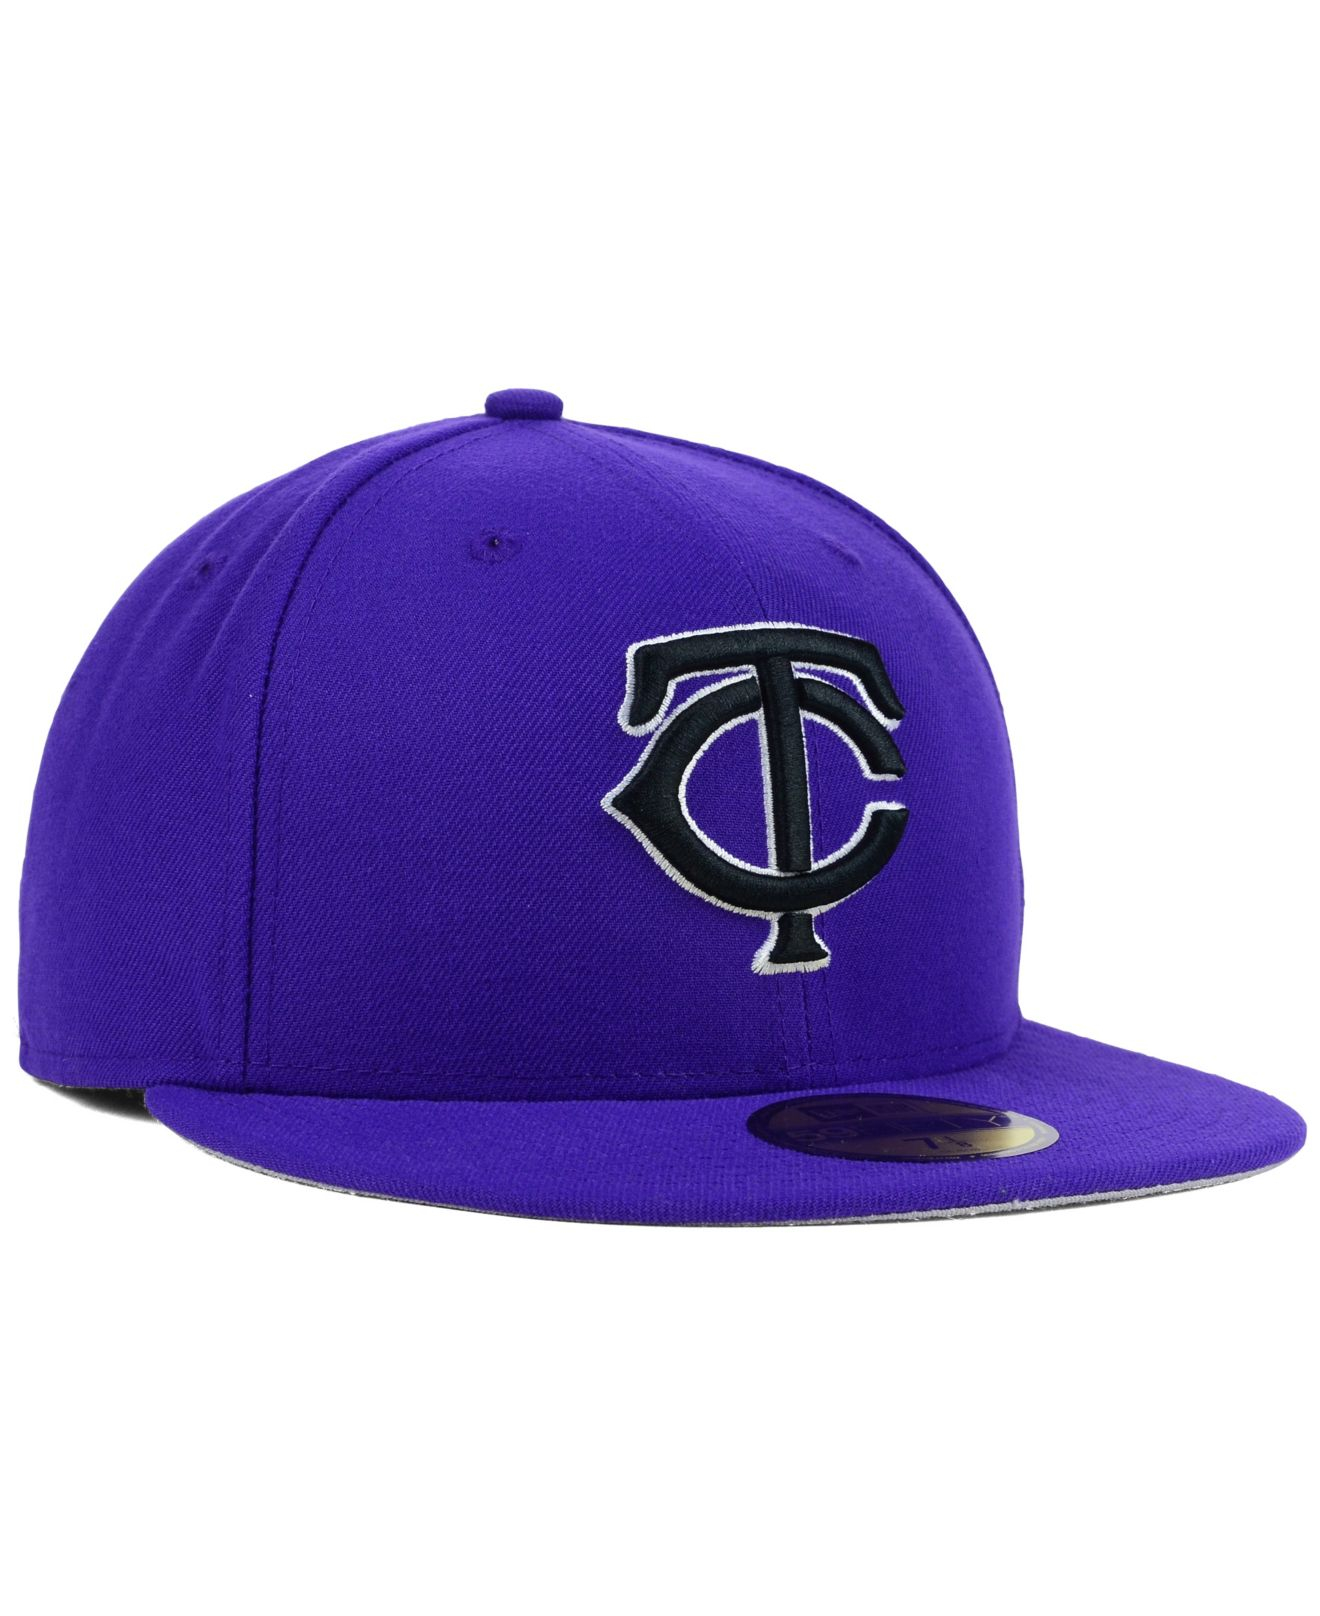 Lyst - Ktz Minnesota Twins C-dub 59fifty Cap in Purple